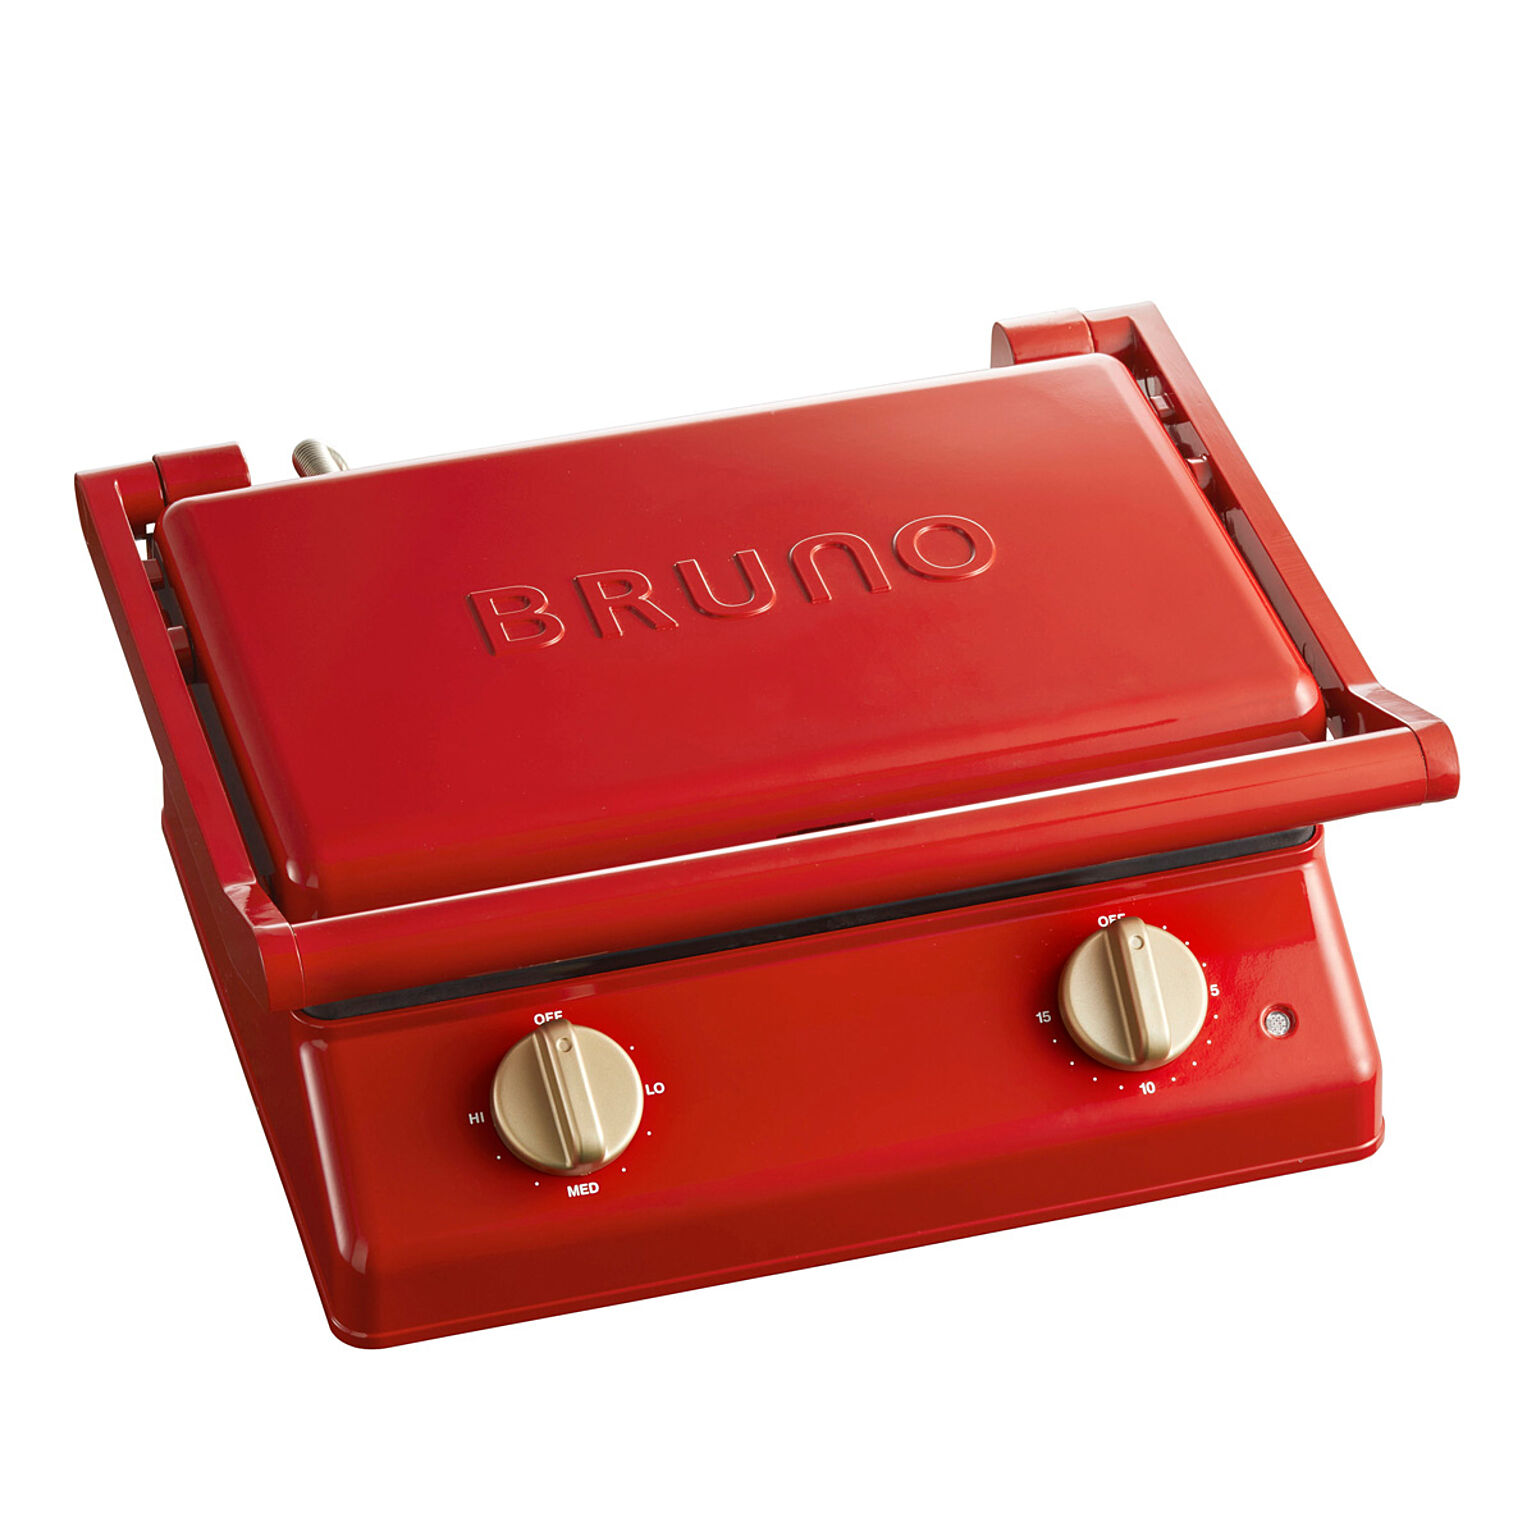 ブルーノ BRUNO グリルサンドメーカー ダブル BOE084 ホットサンドメーカー キッチン家電 調理器具 食パン サンドイッチ